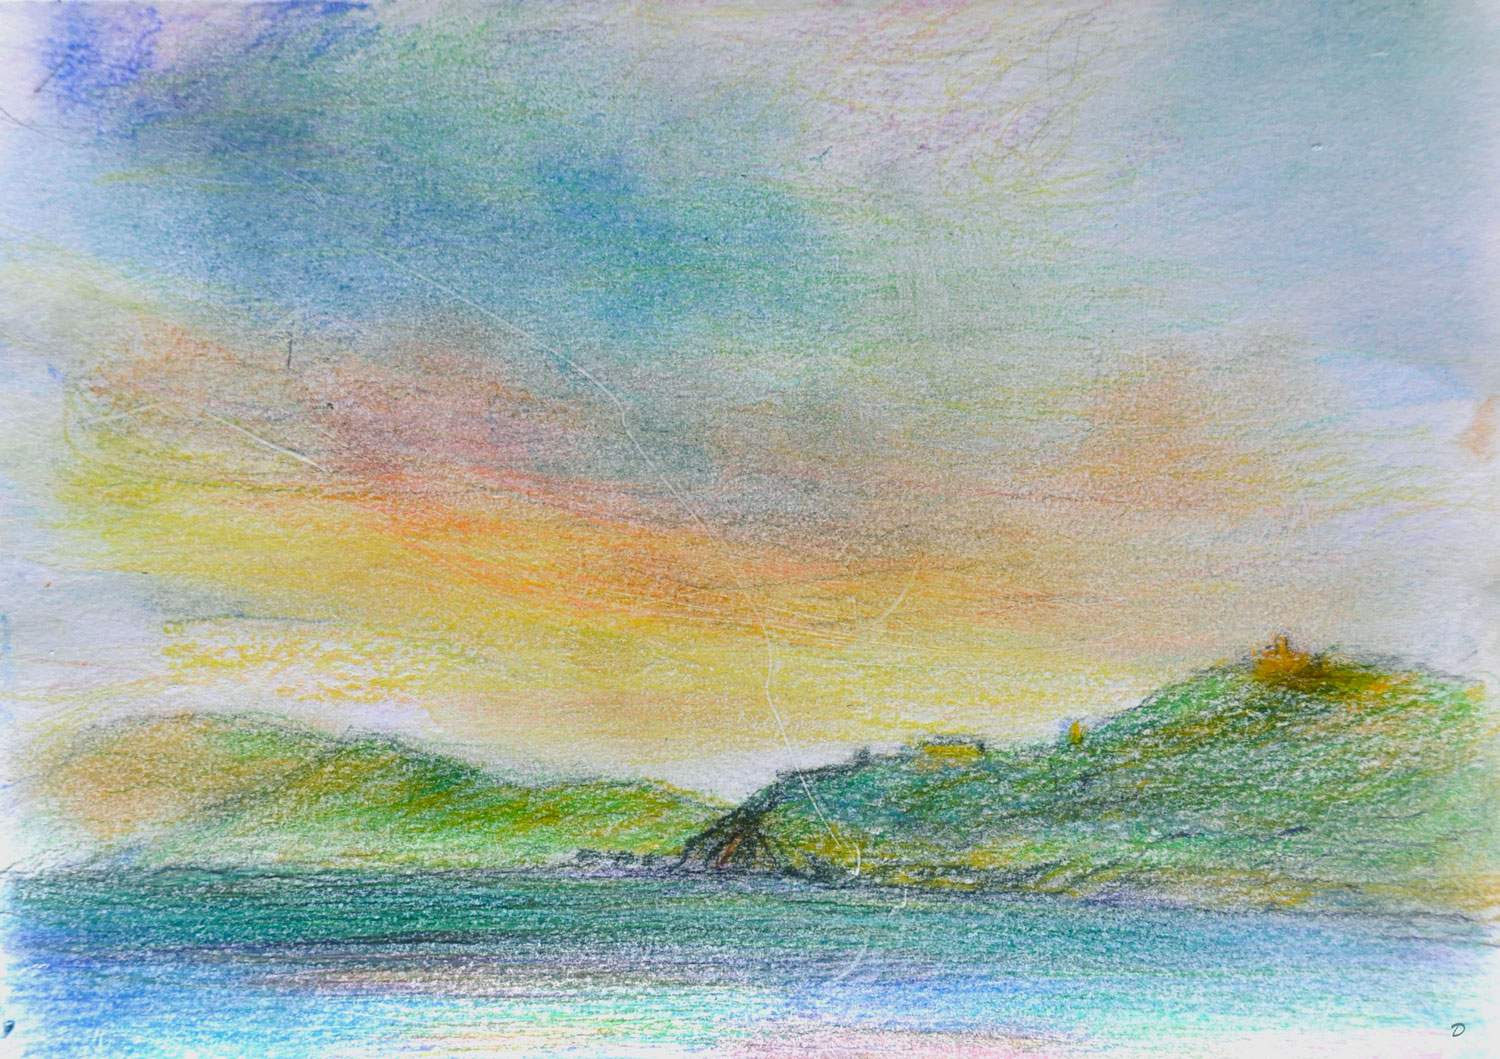 Loin Port-Vendres, 1. Crayon de couleur et pastel sur papier, 30x42, 2022